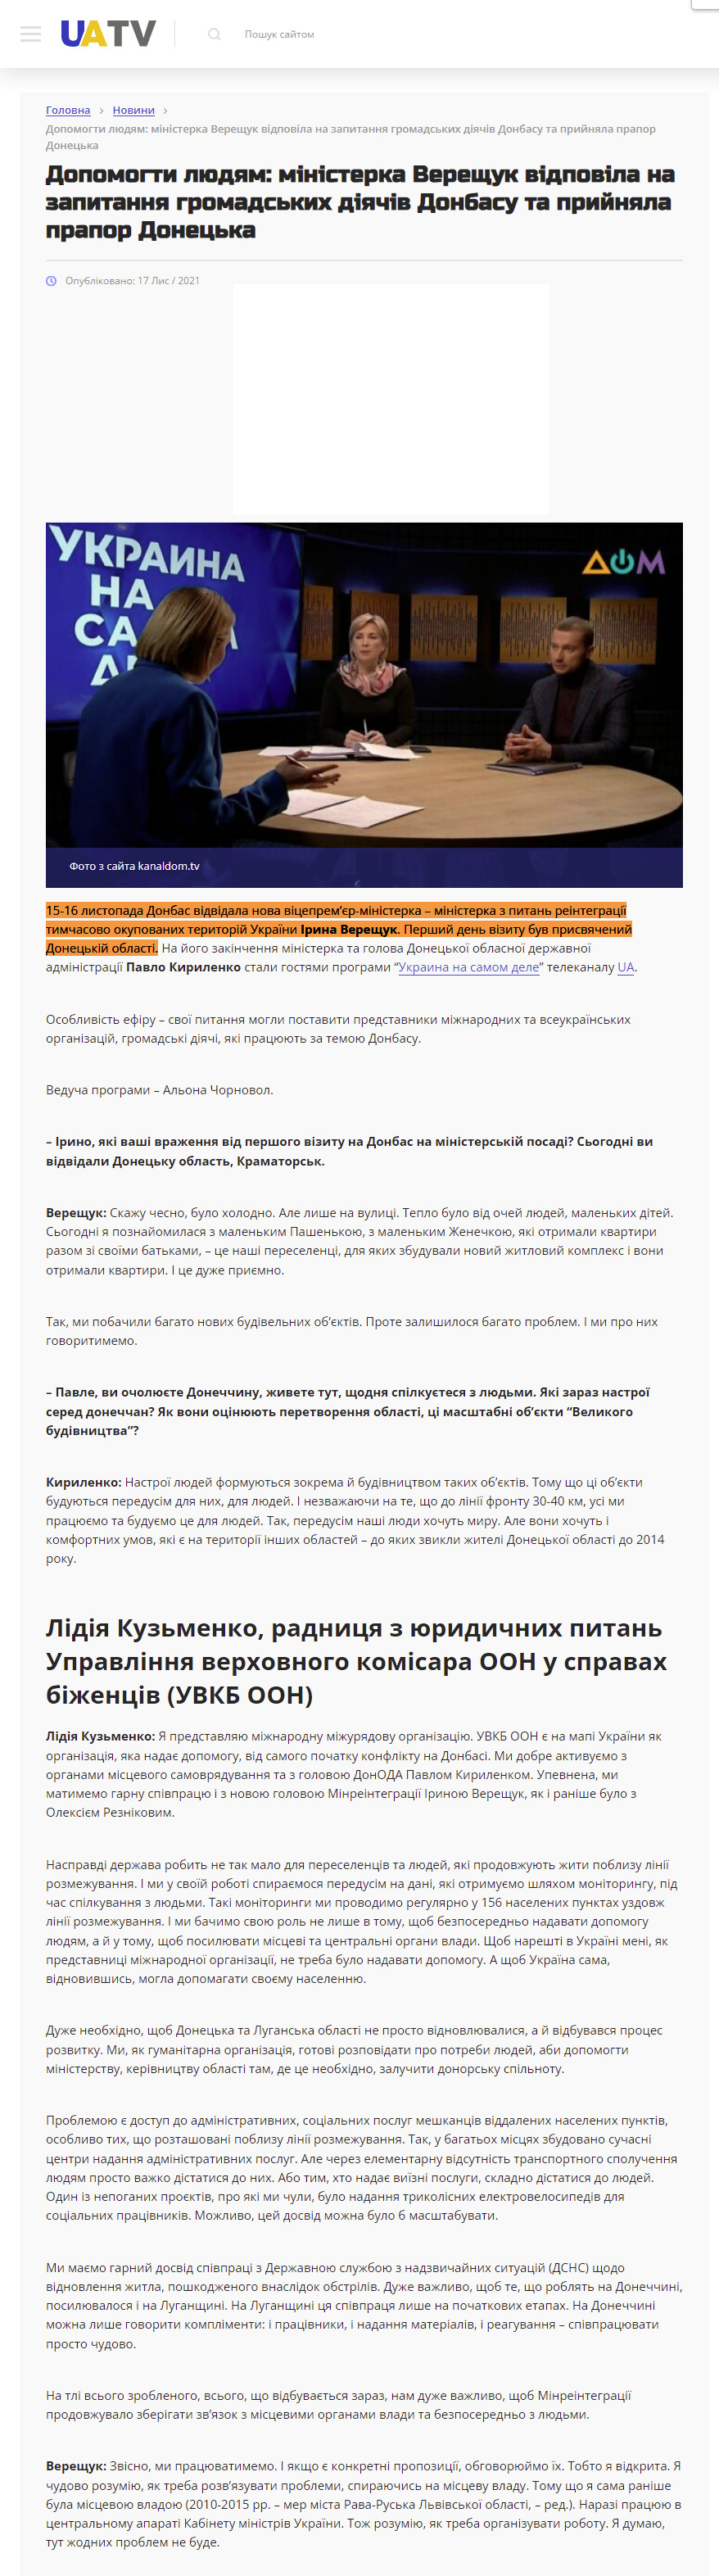 https://uatv.ua/uk/dopomogty-lyudyam-ministerka-vereshhuk-vidpovila-na-zapytannya-gromadskyh-diyachiv-donbasu-ta-pryjnyala-prapor-donetska/